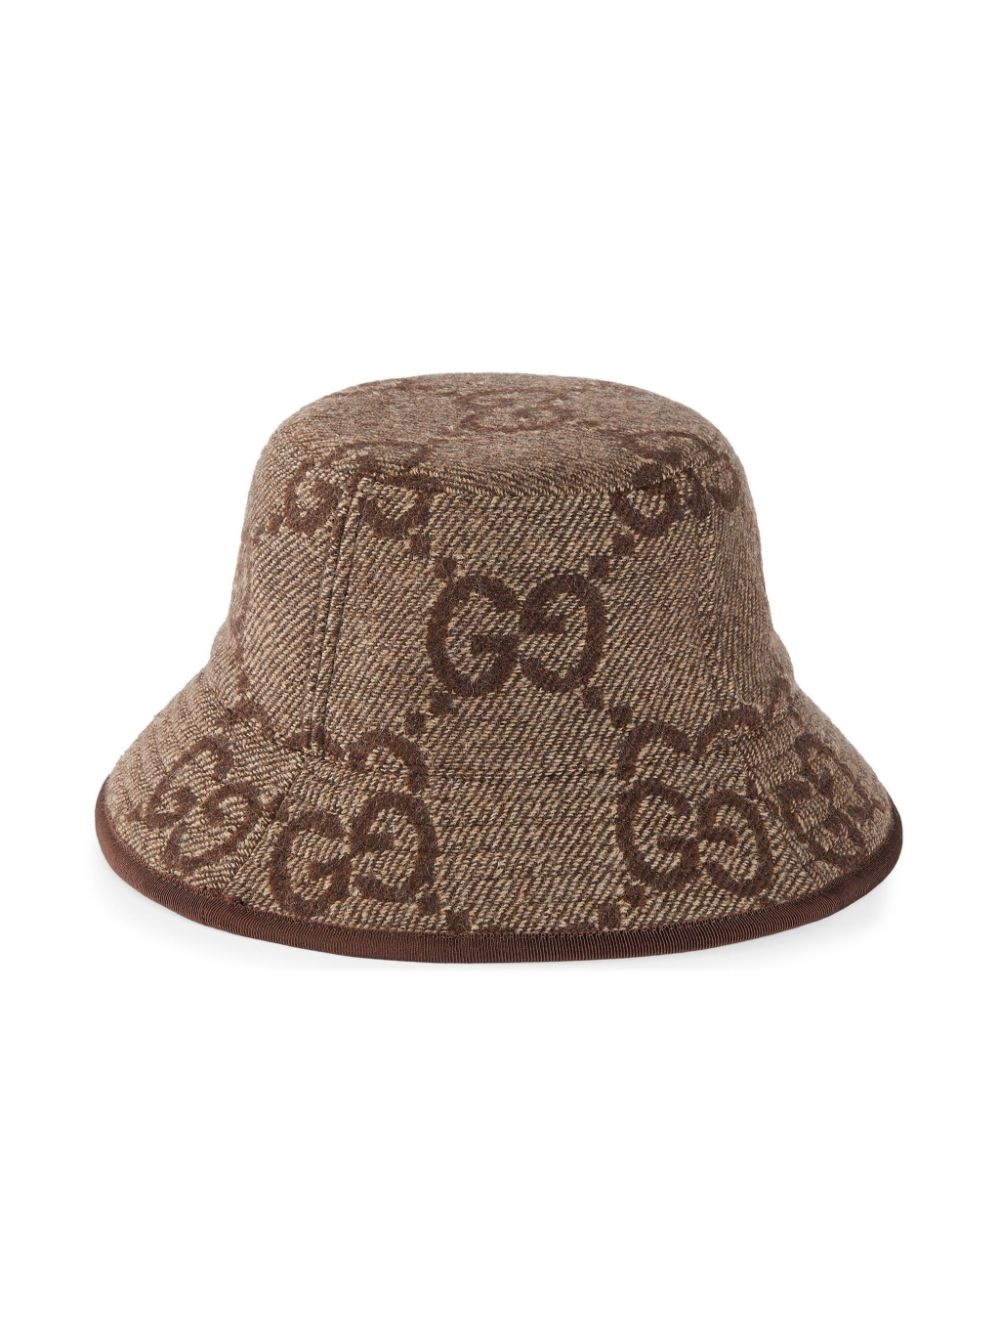 Jumbo GG wool bucket hat - 3